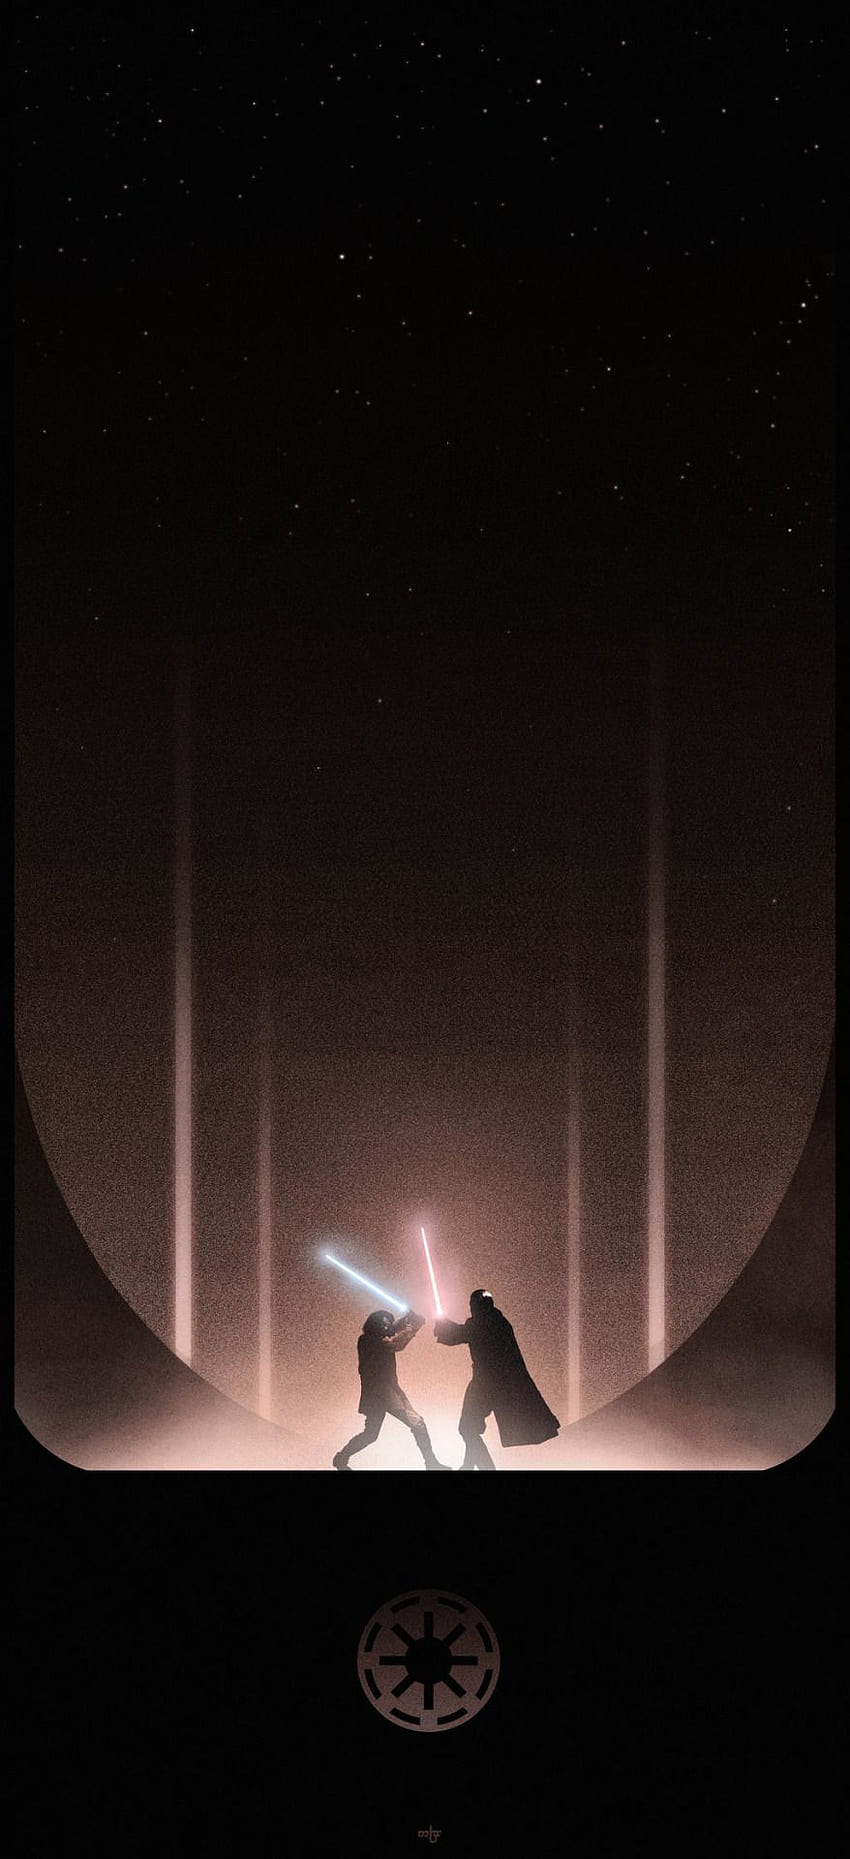 lightsaber battle wallpaper